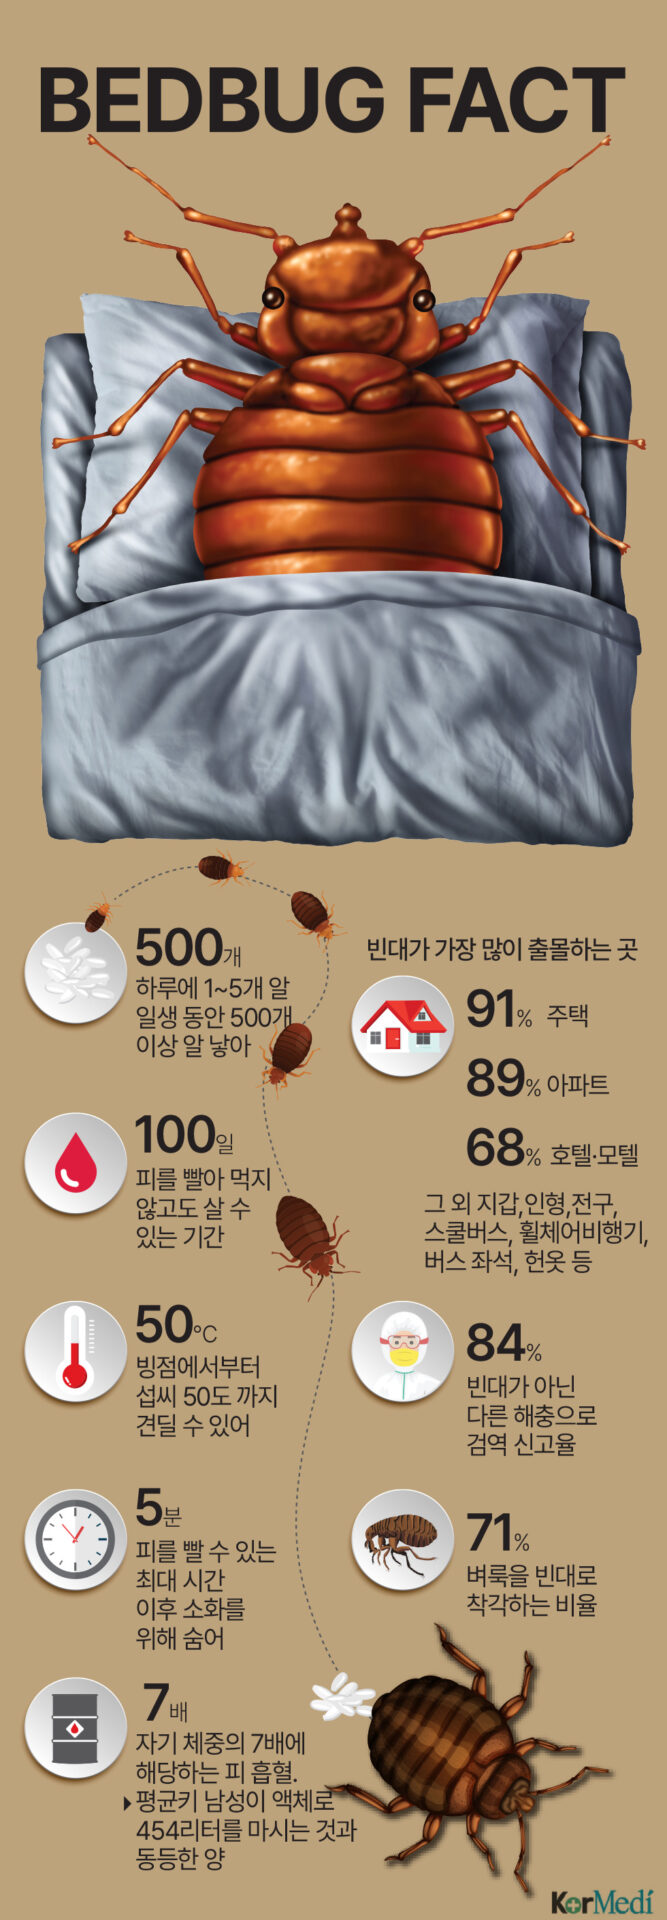 [한컷건강] “빈대 검역 원래 해왔다”…서울 빈대 출몰 사실은